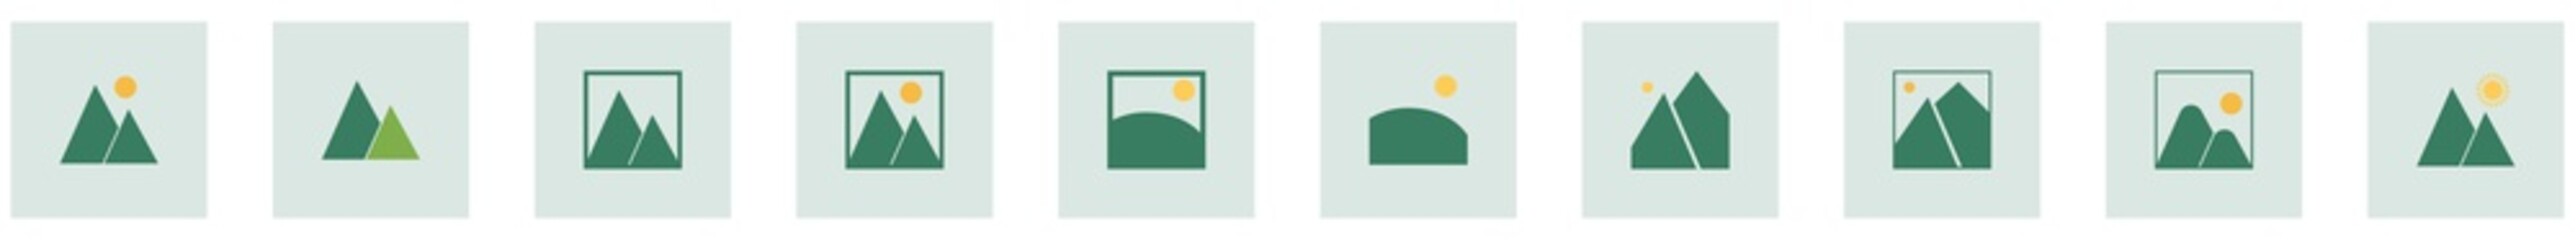 Landscape_Picture icon - Flat design, glyph style icon - Small colored